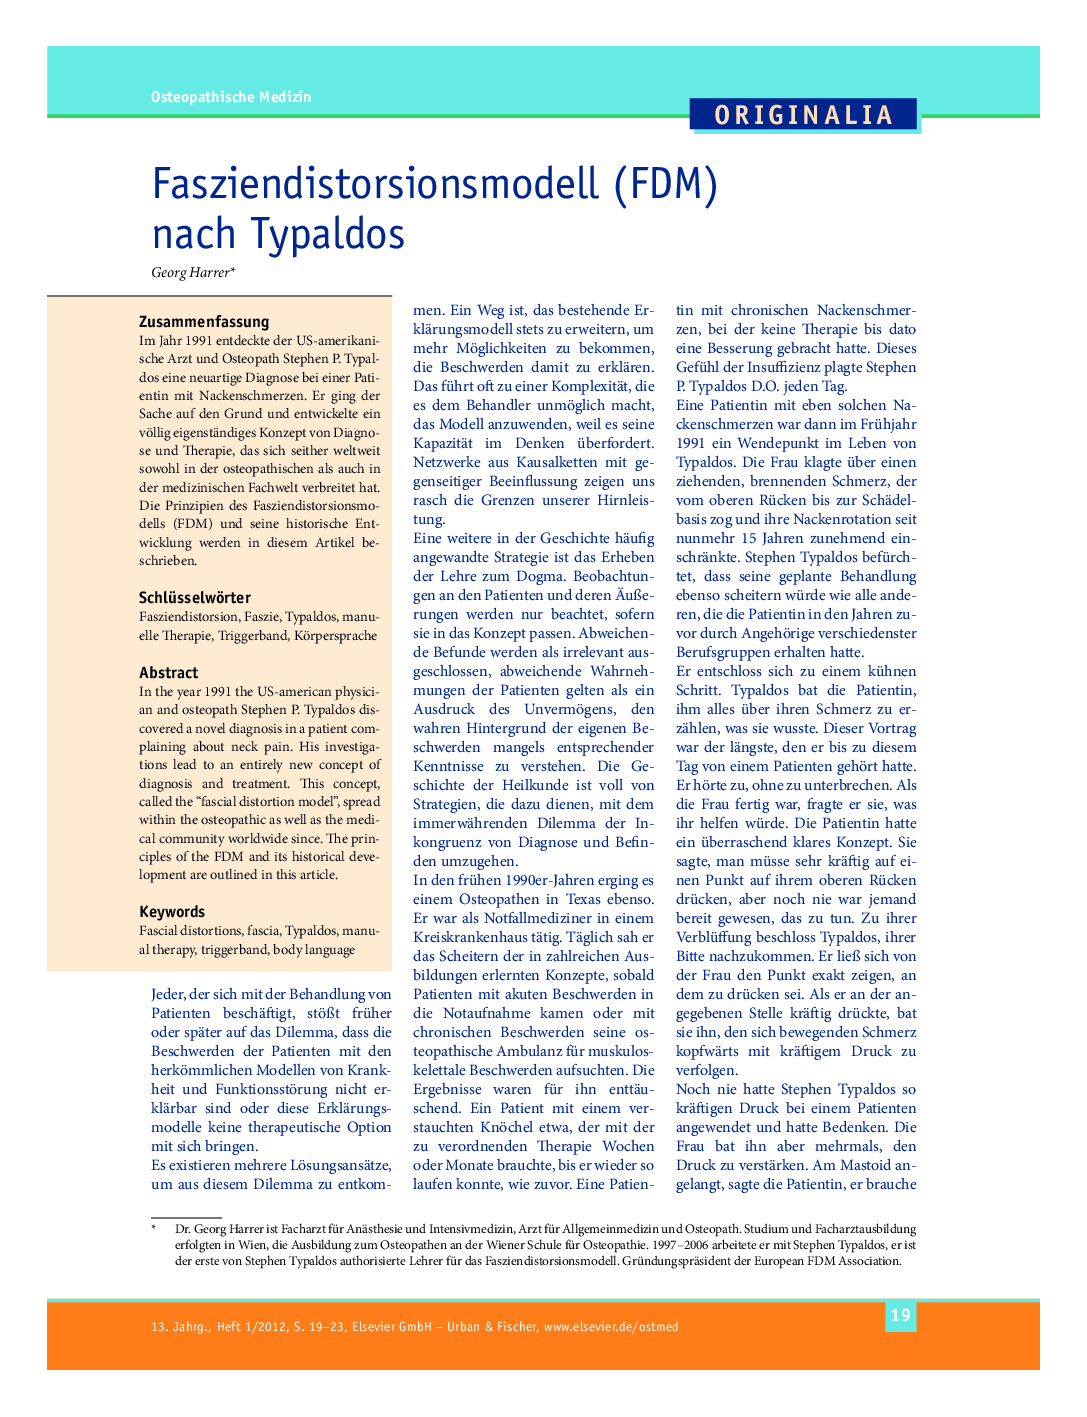 Fasziendistorsionsmodell (FDM) nach Typaldos